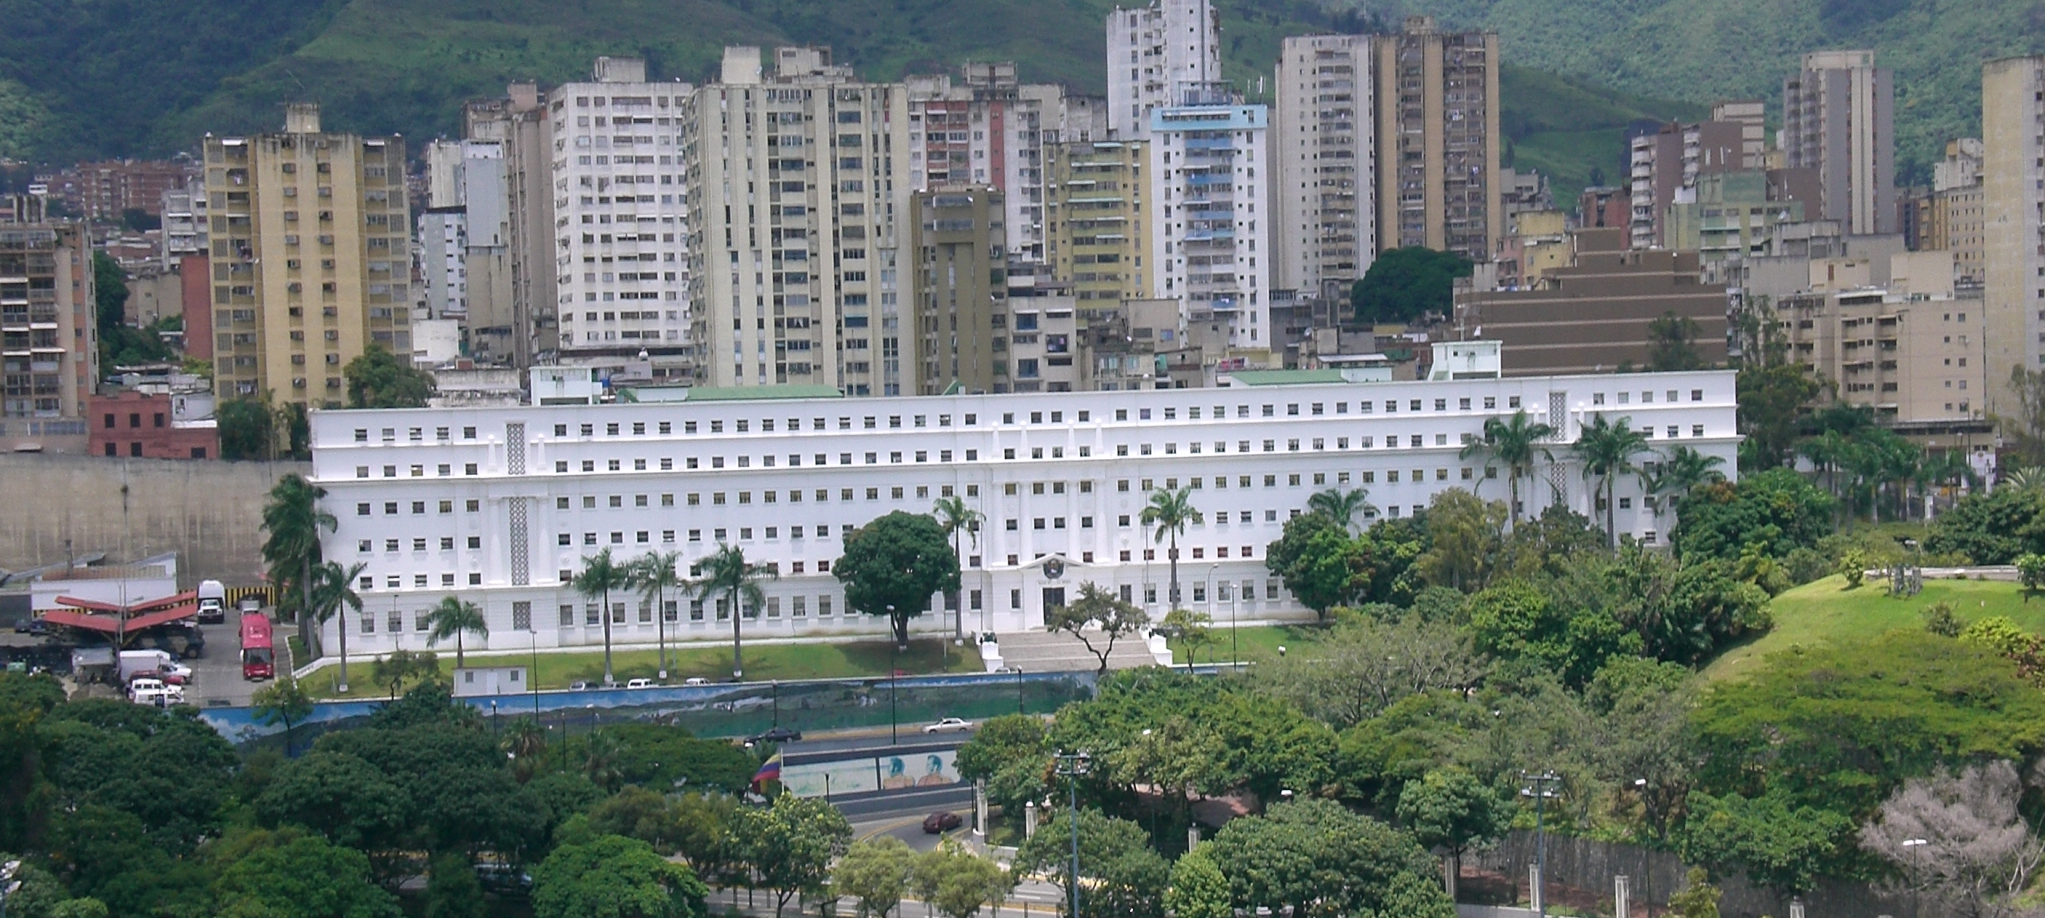 En este edificio blanco rectangular, ubicado frente al Palacio Presidencial de Miraflores, en el noroeste de Caracas, Venezuela, opera uno de los “bunkers” del gobierno de Nicolás Maduro que espía masivamente las comunicaciones privadas de miles de venezolano